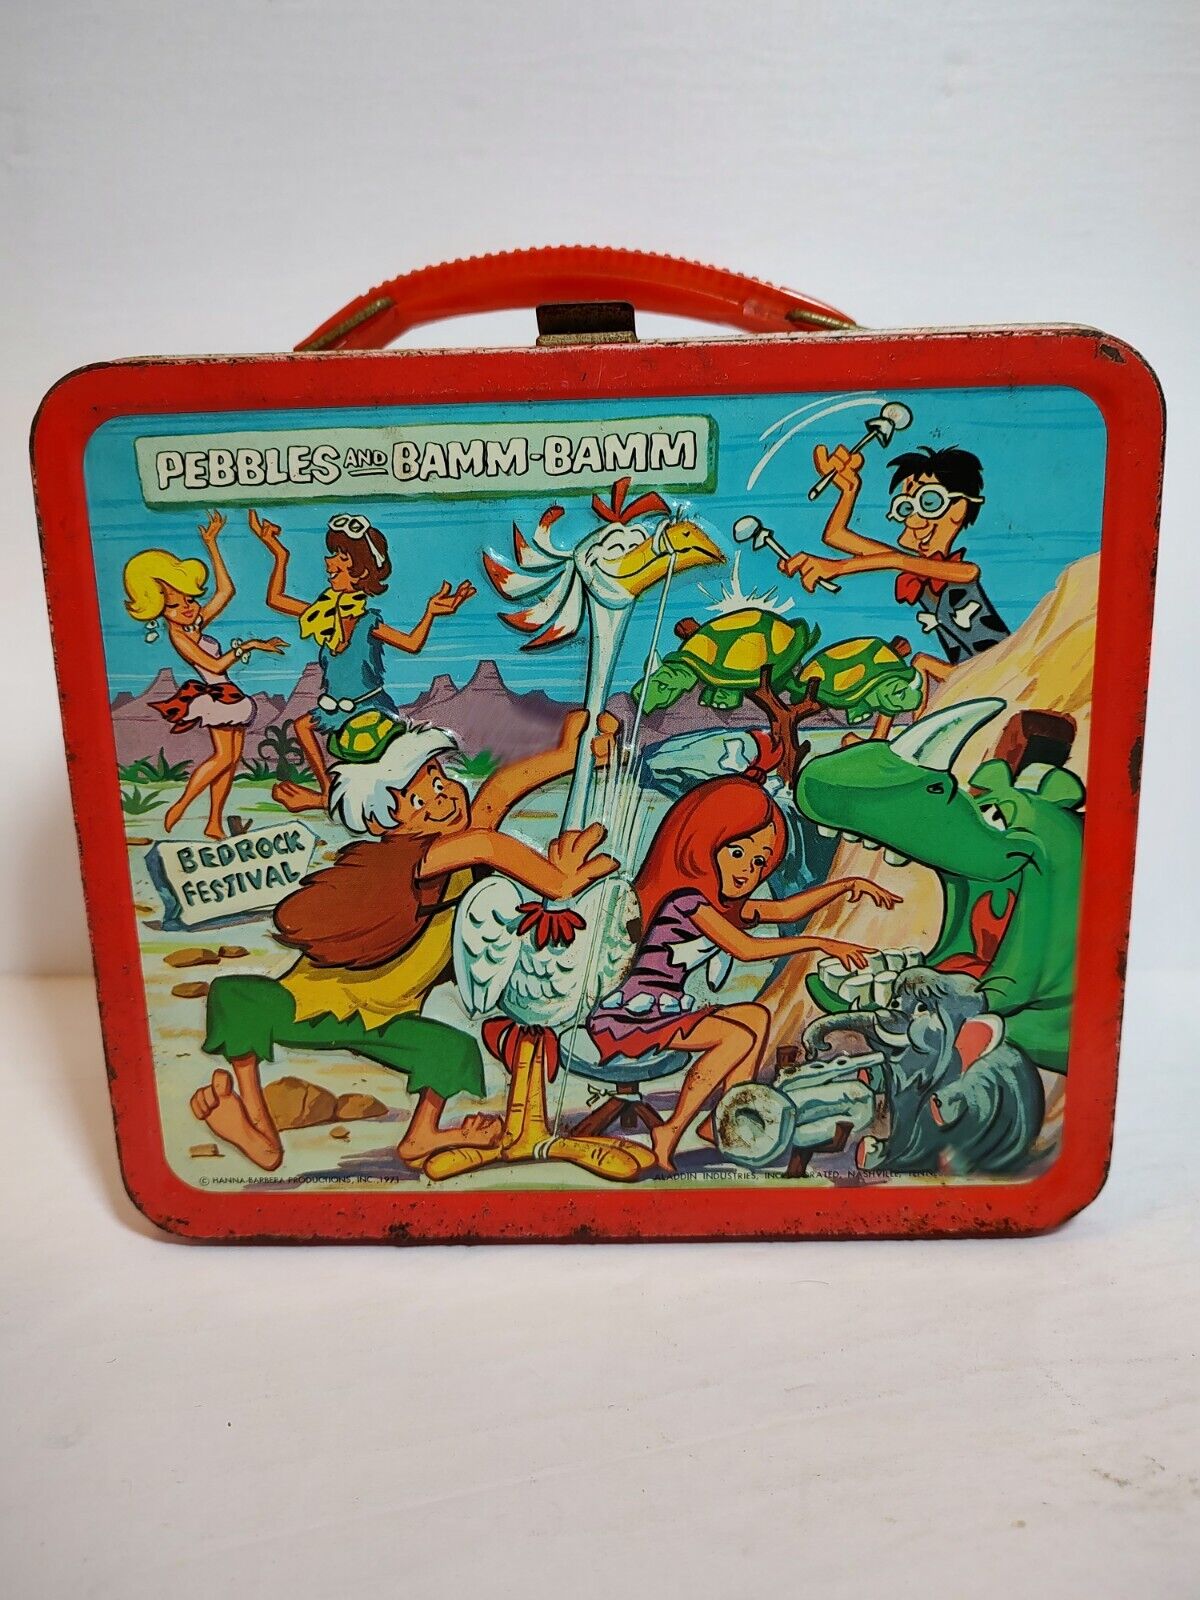 Vintage The Flintstones Pebbles And Bamm-Bamm Metal Lunchbox (1971)